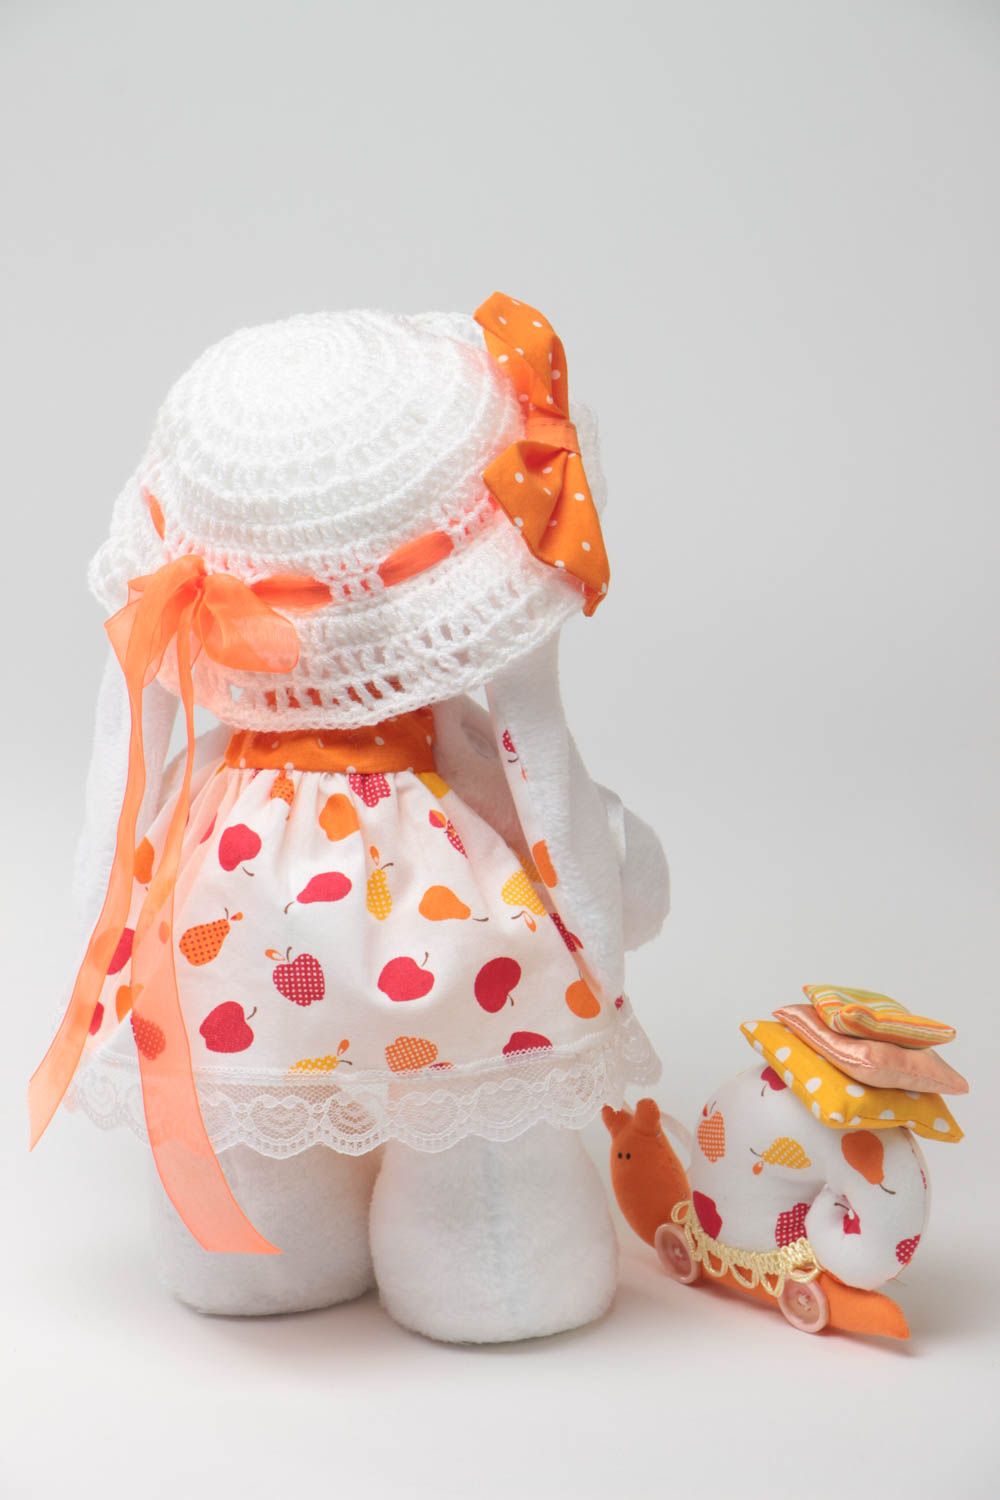 Textil Kuscheltier Hase mit Schnecke handgemachtes Spielzeug für Kinder foto 4